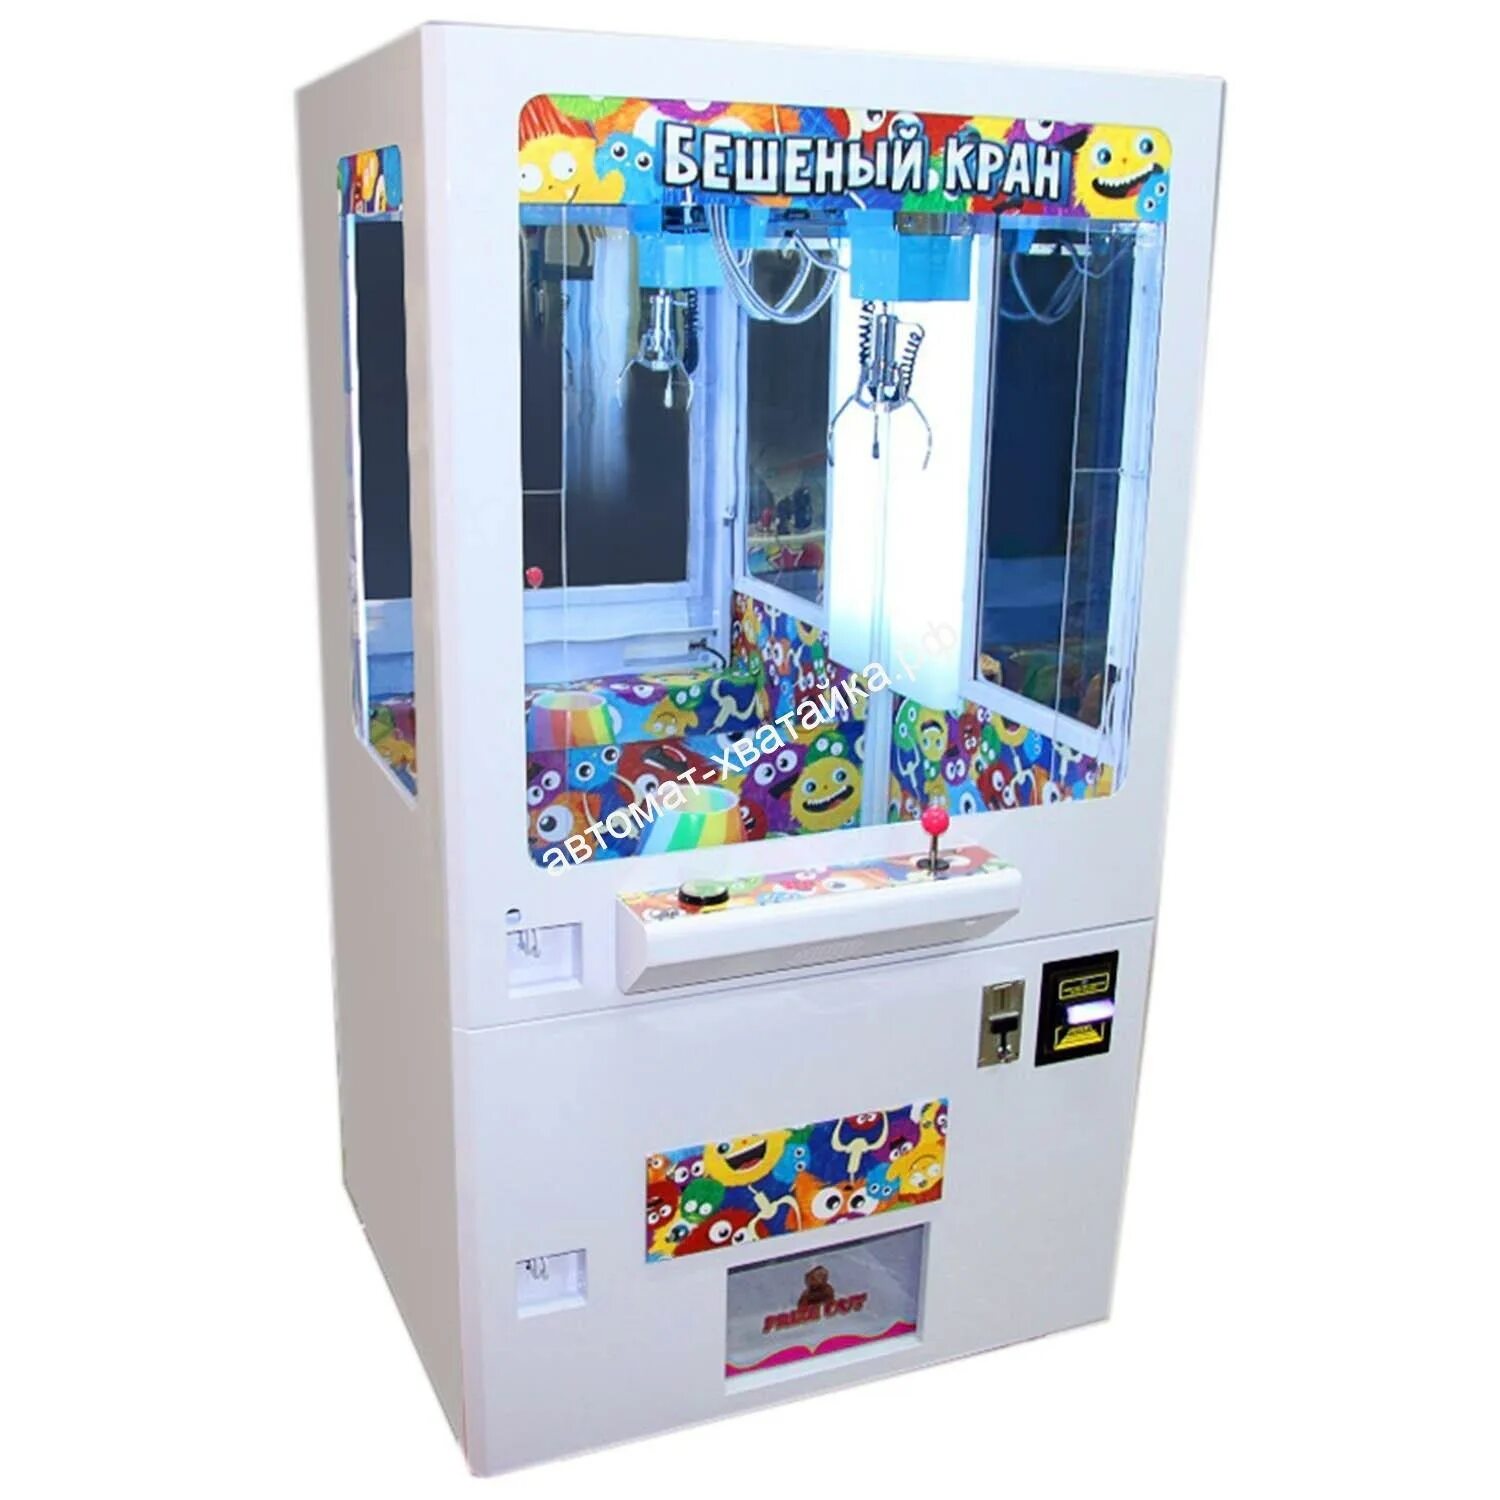 Купить игровой автомат с игрушками. Автомат хватайка игрушечный. Мини автомат хватайка. Игровой автомат хватайка js1701. Игровой автомат с игрушками хватайка.